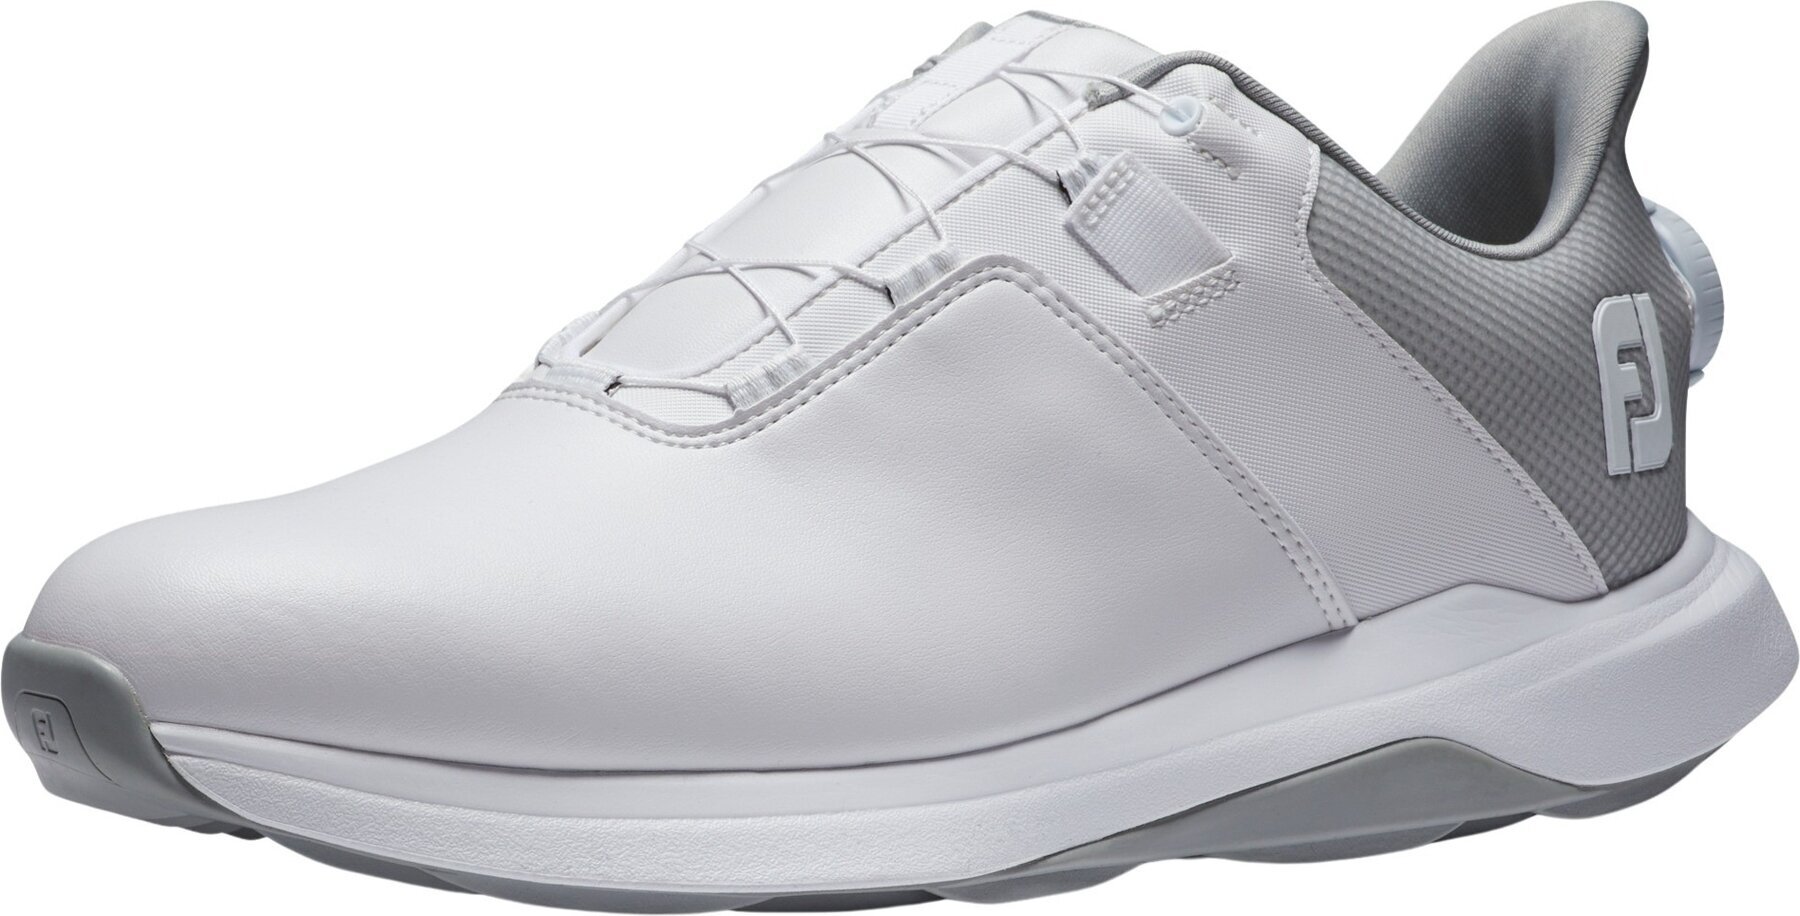 Calçado de golfe para homem Footjoy ProLite Mens Golf Shoes White/White/Grey 45